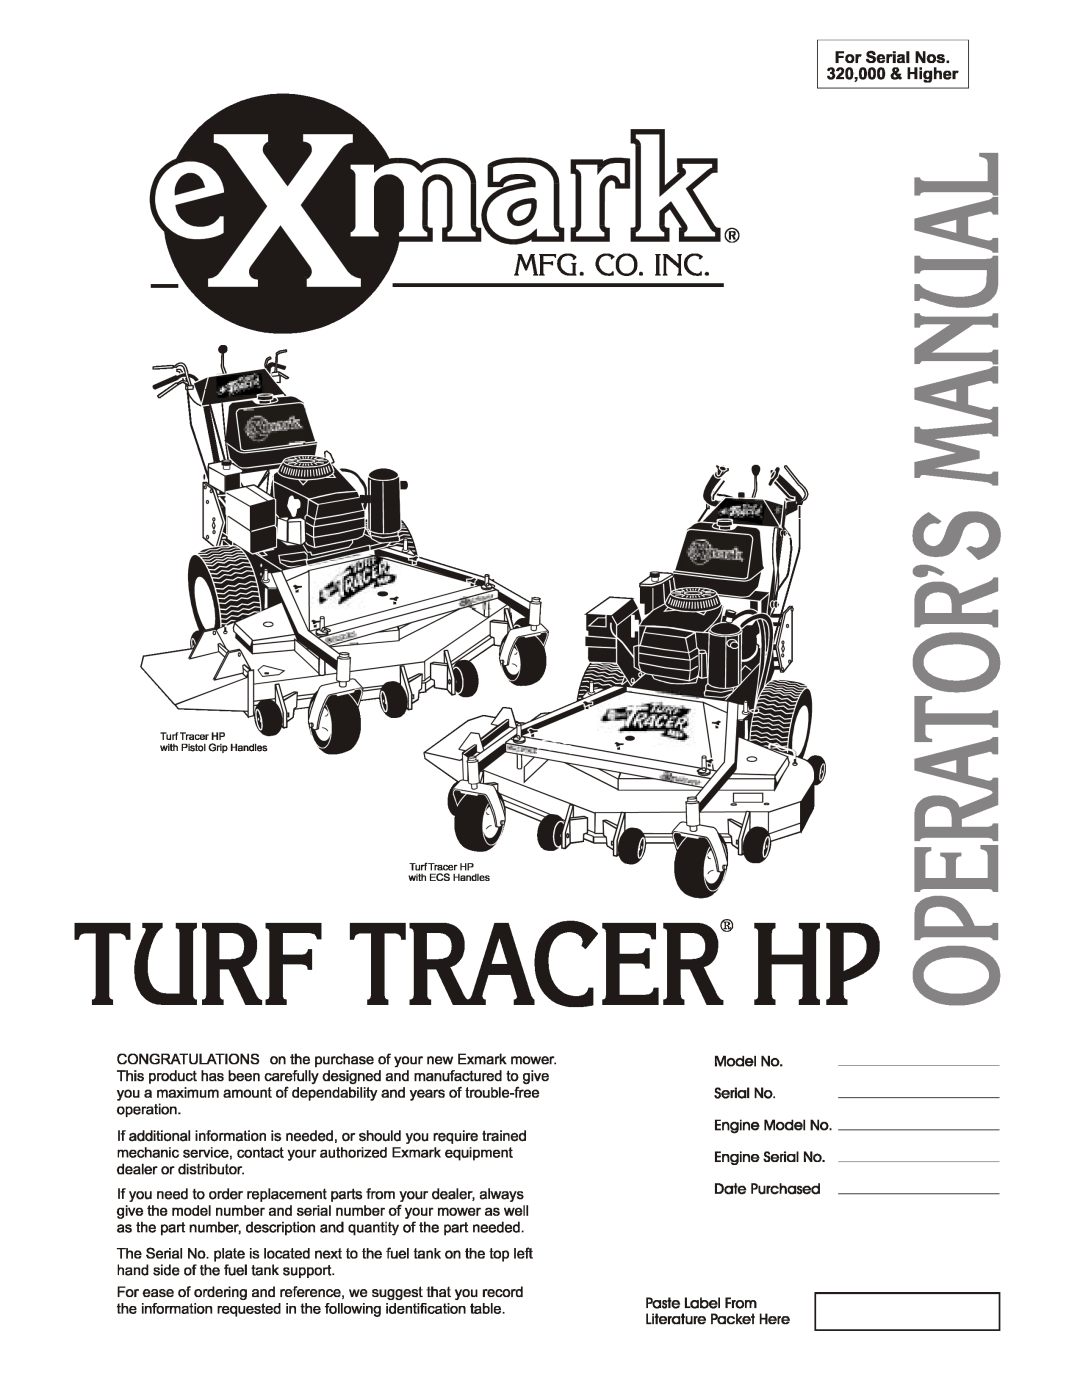 Exmark TT4817KAEC, TT4817KAC, TT5217KAC, TT3615KAC, TT5217KAEC manual 